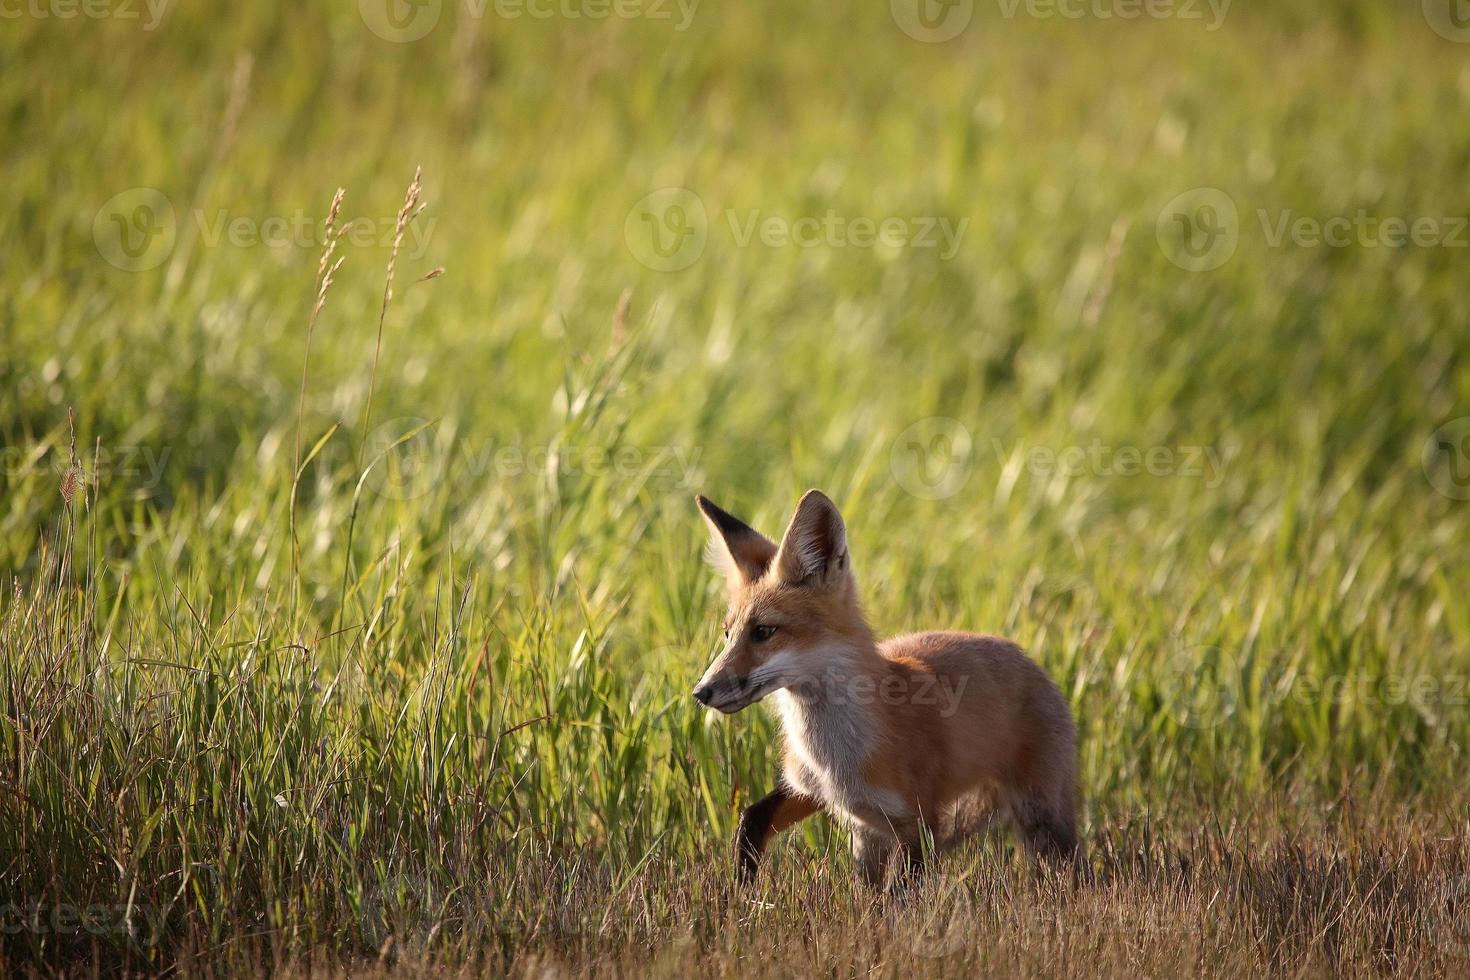 jovem raposa ao lado de uma estrada rural saskatchewan foto